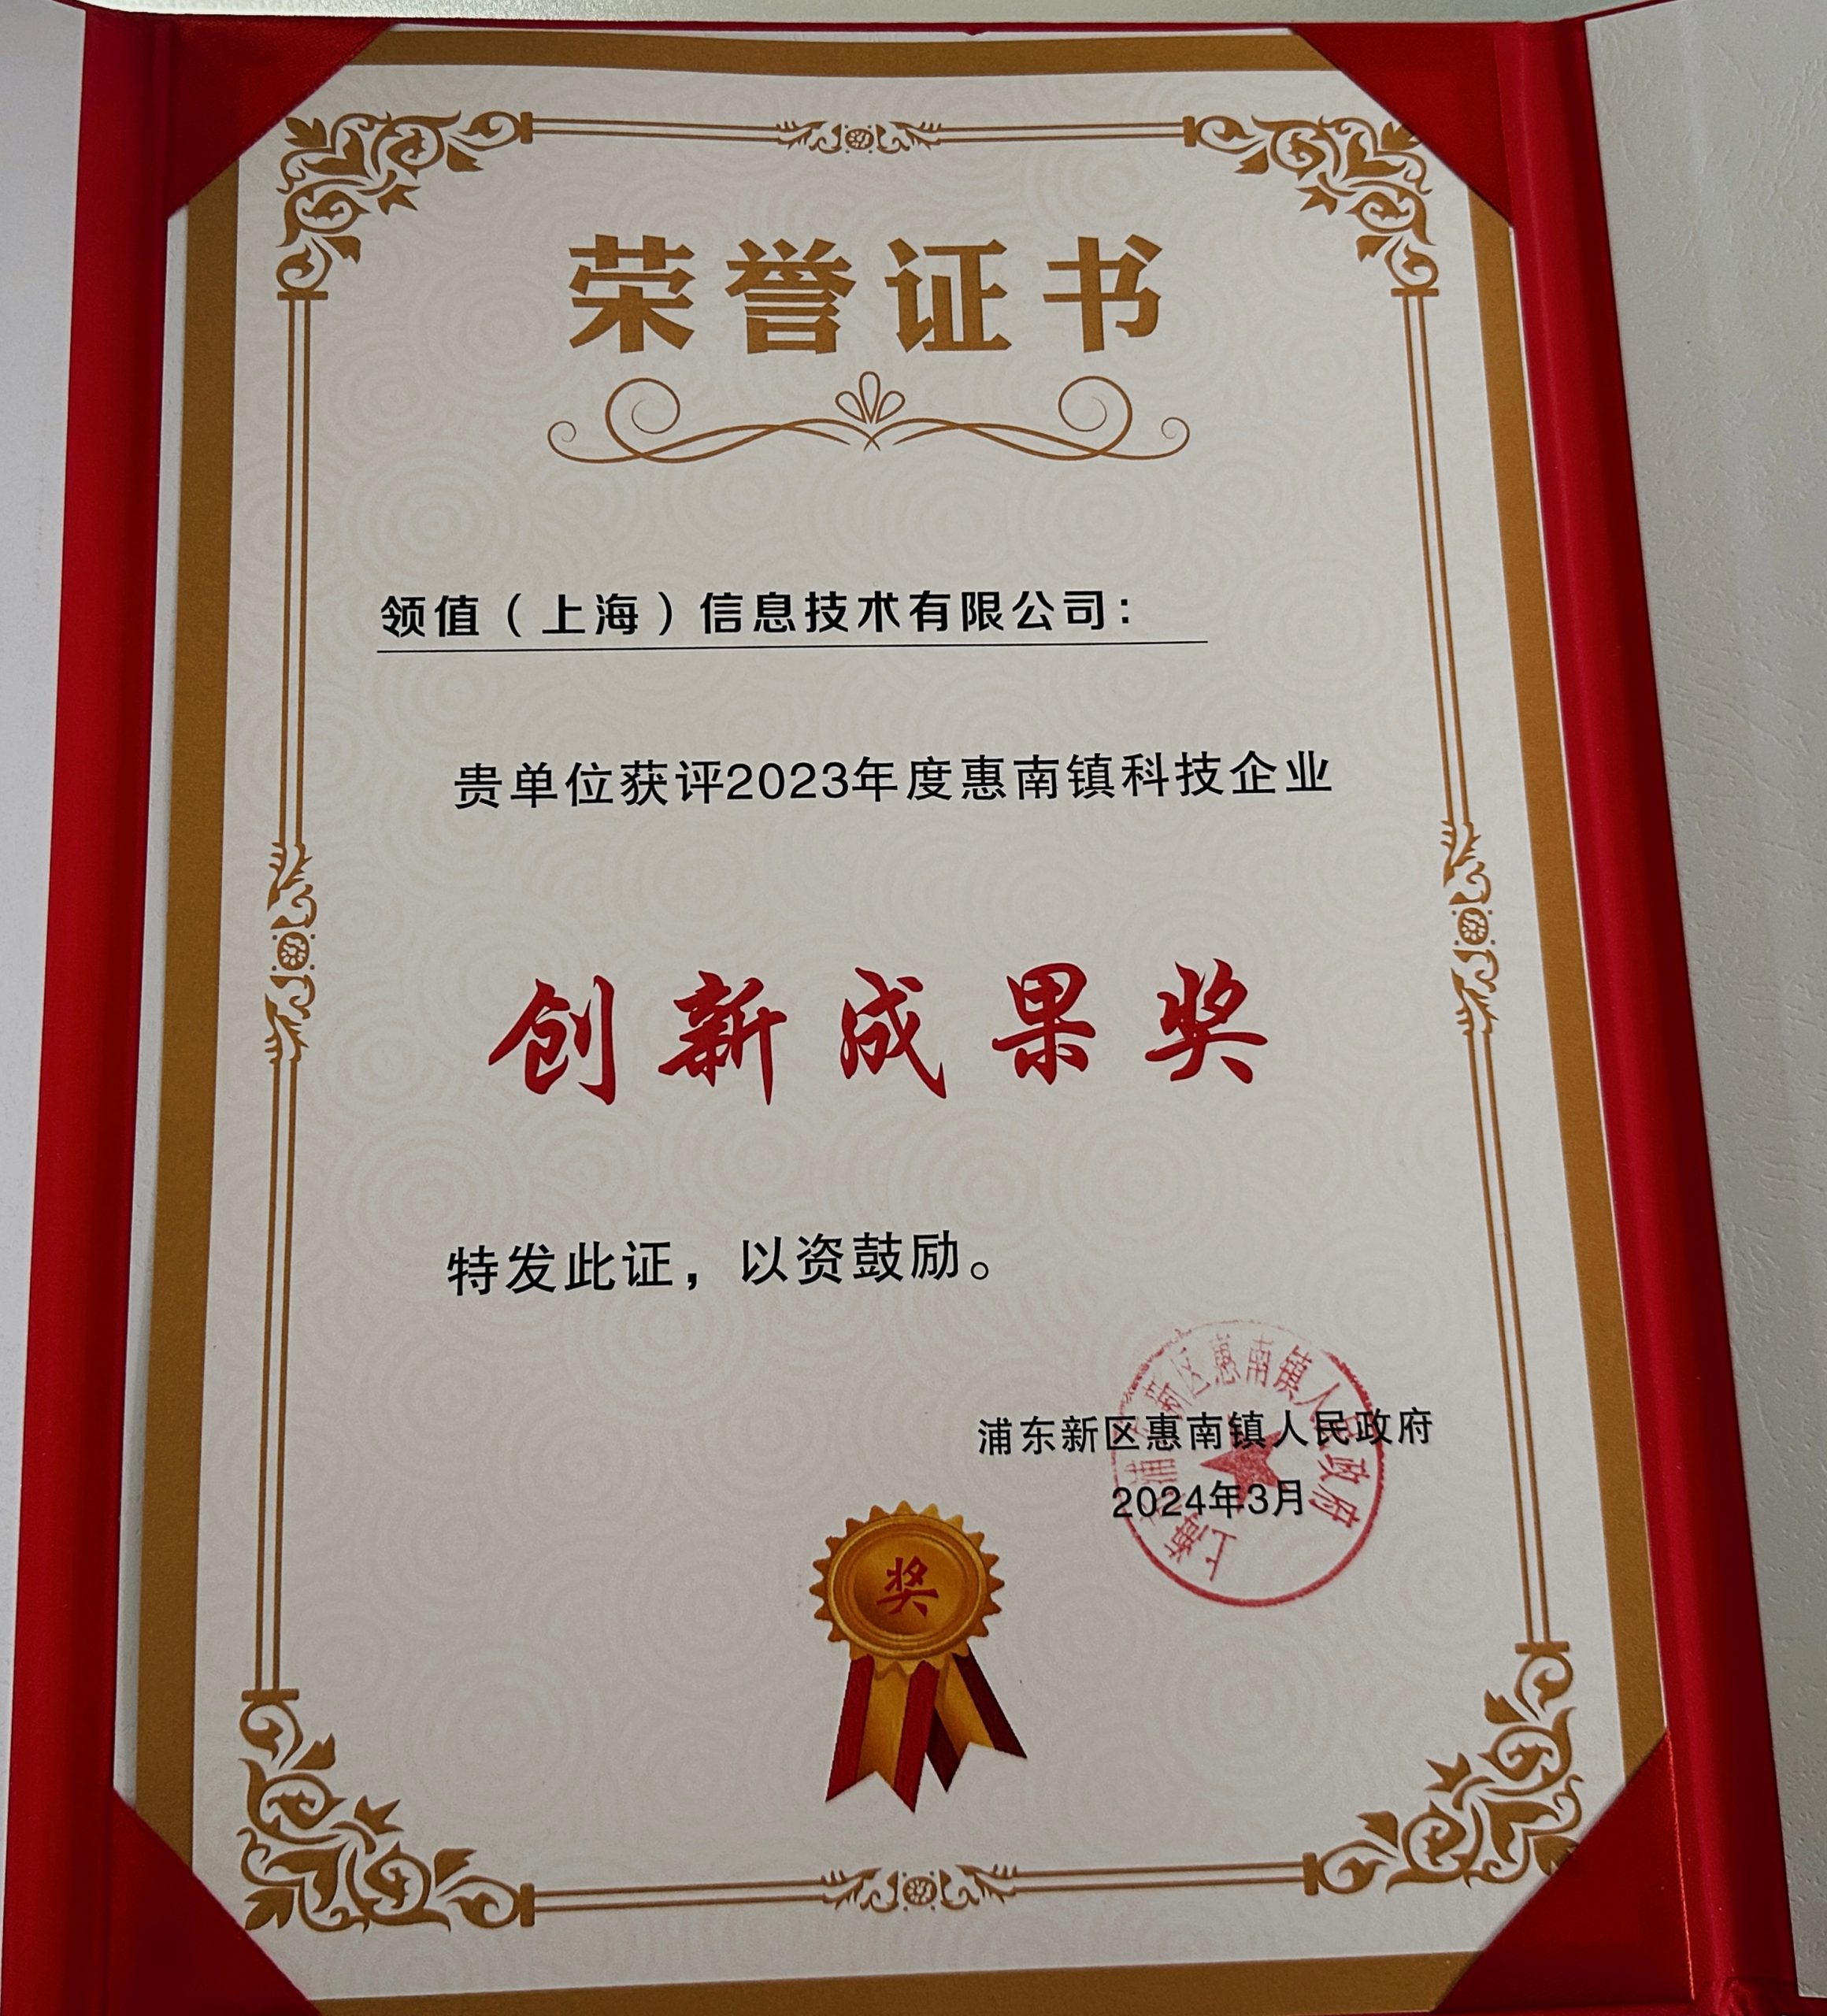 领值公司荣获2023年度惠南镇科技企业创新成果奖-1